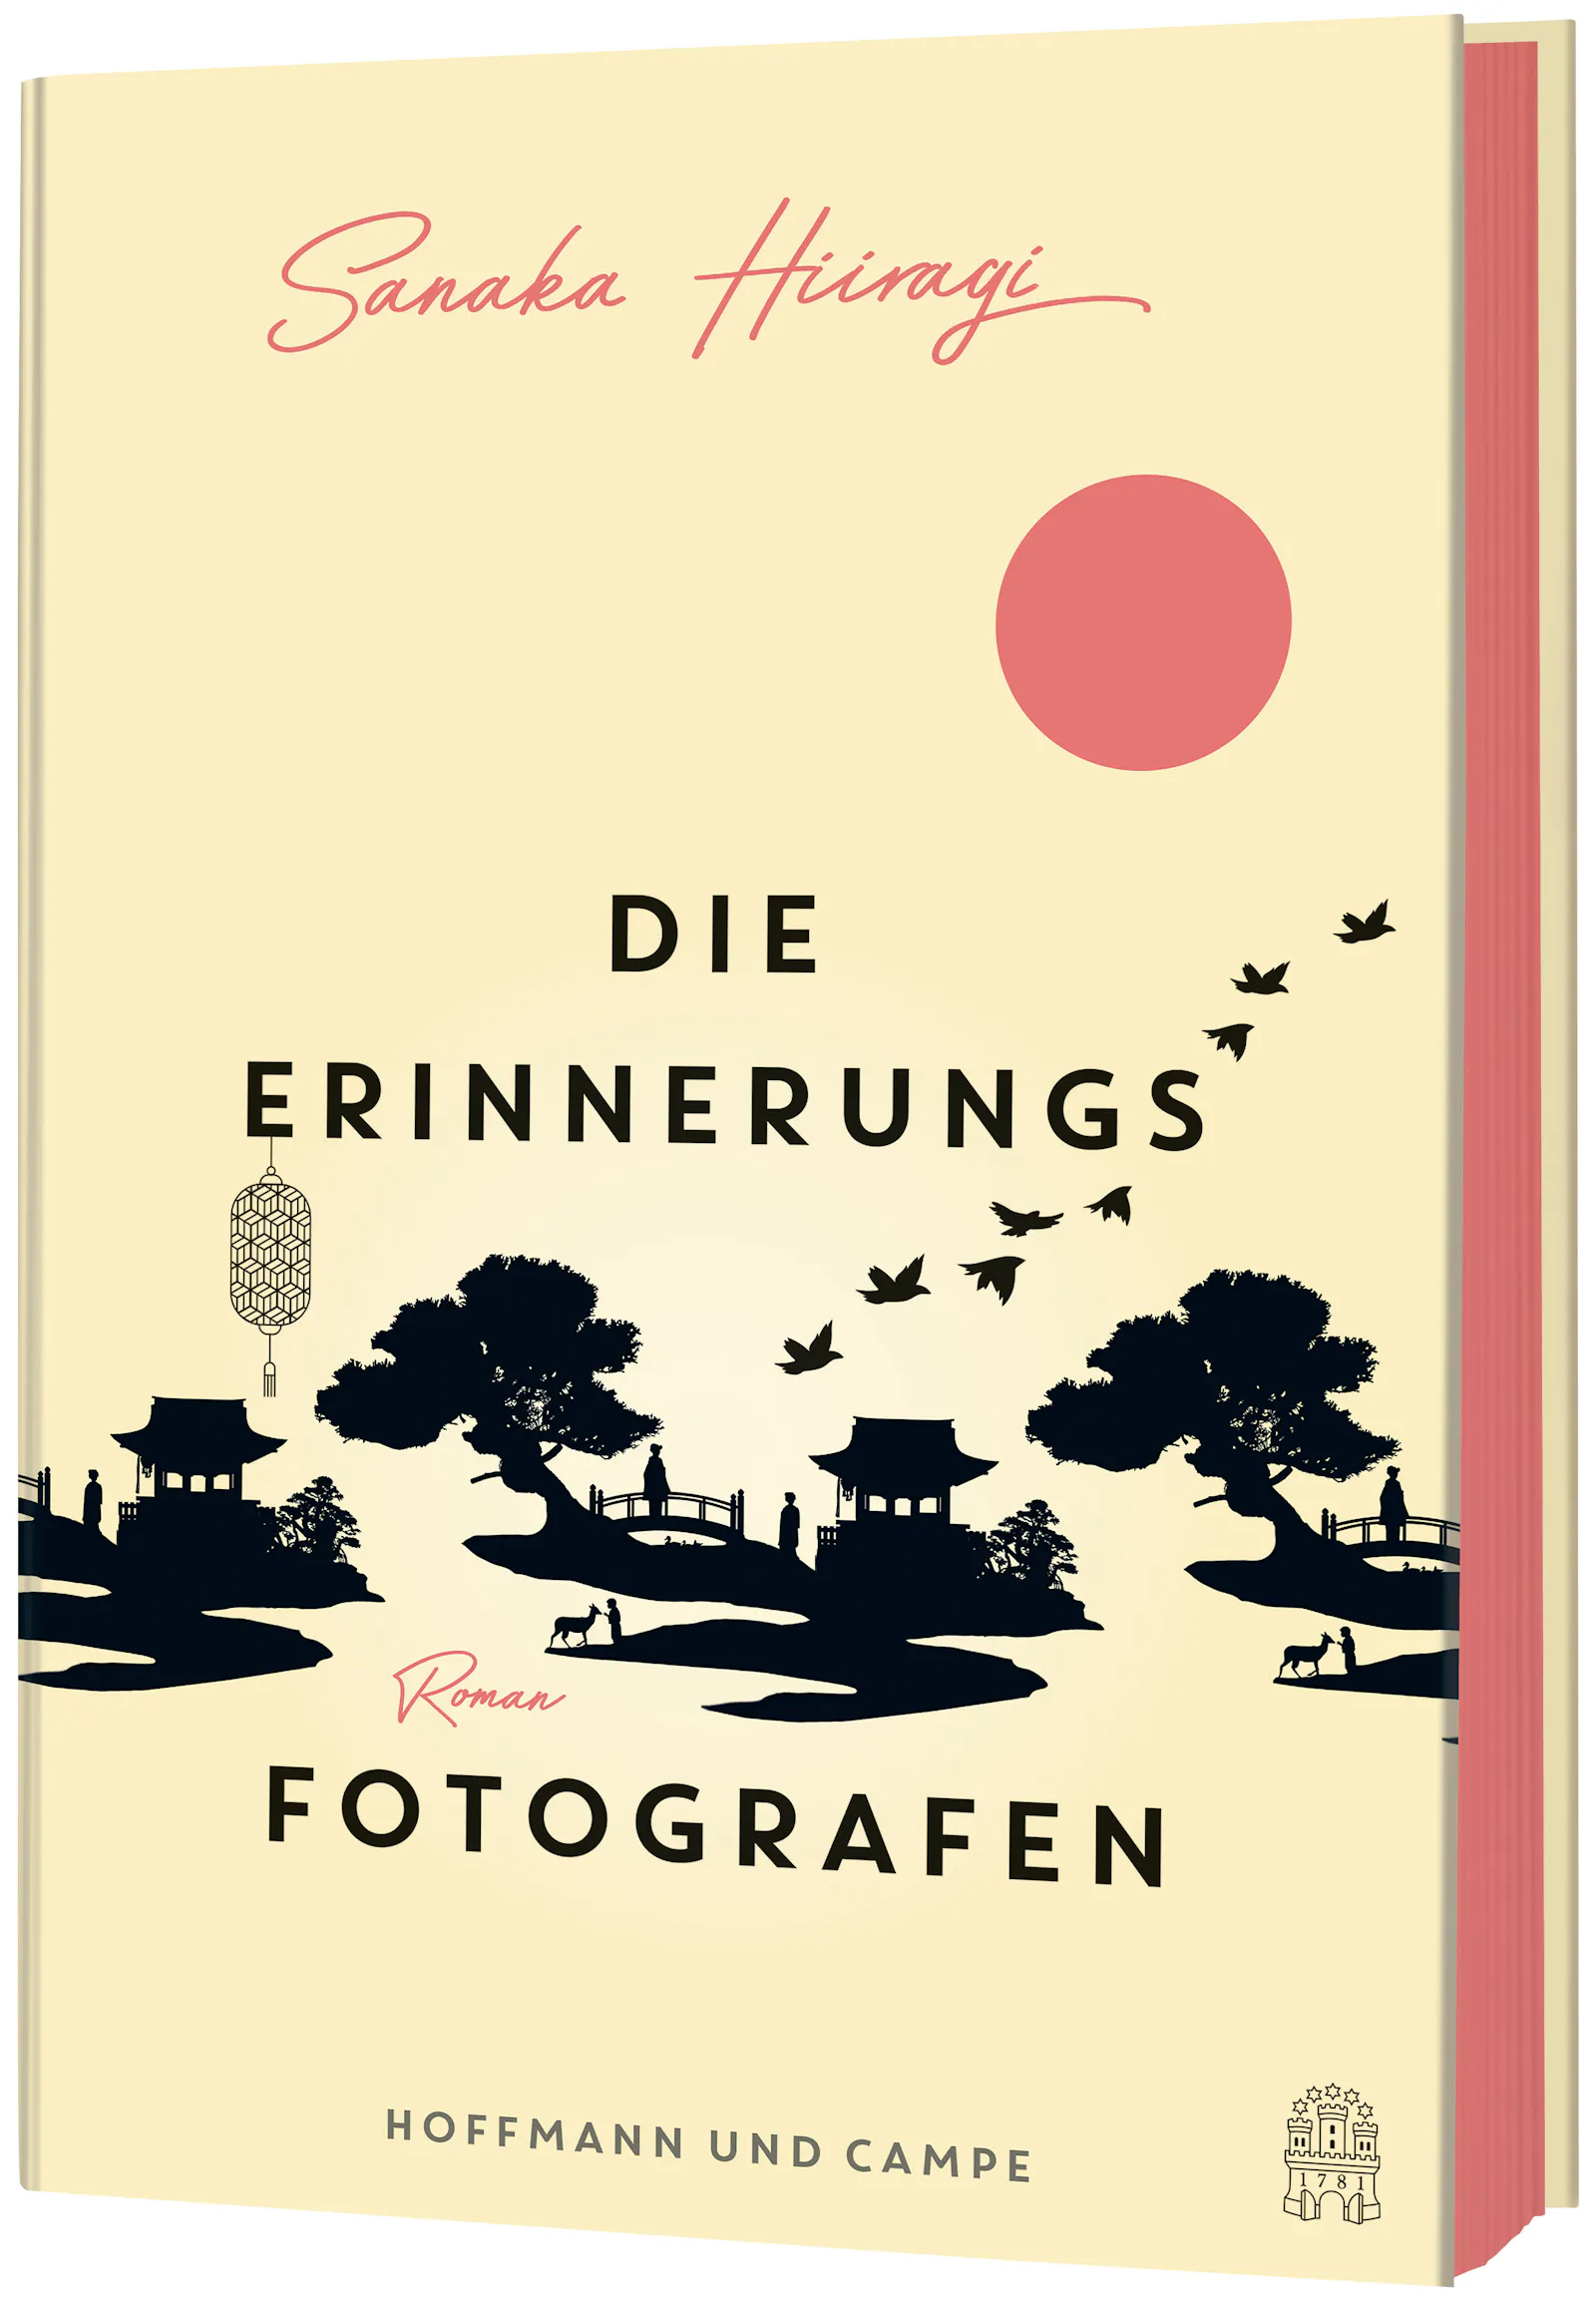 Roman "Die Erinnerungsfotografen" von Sanaka Hiiragi, erschienen bei Hoffmann und Campe.